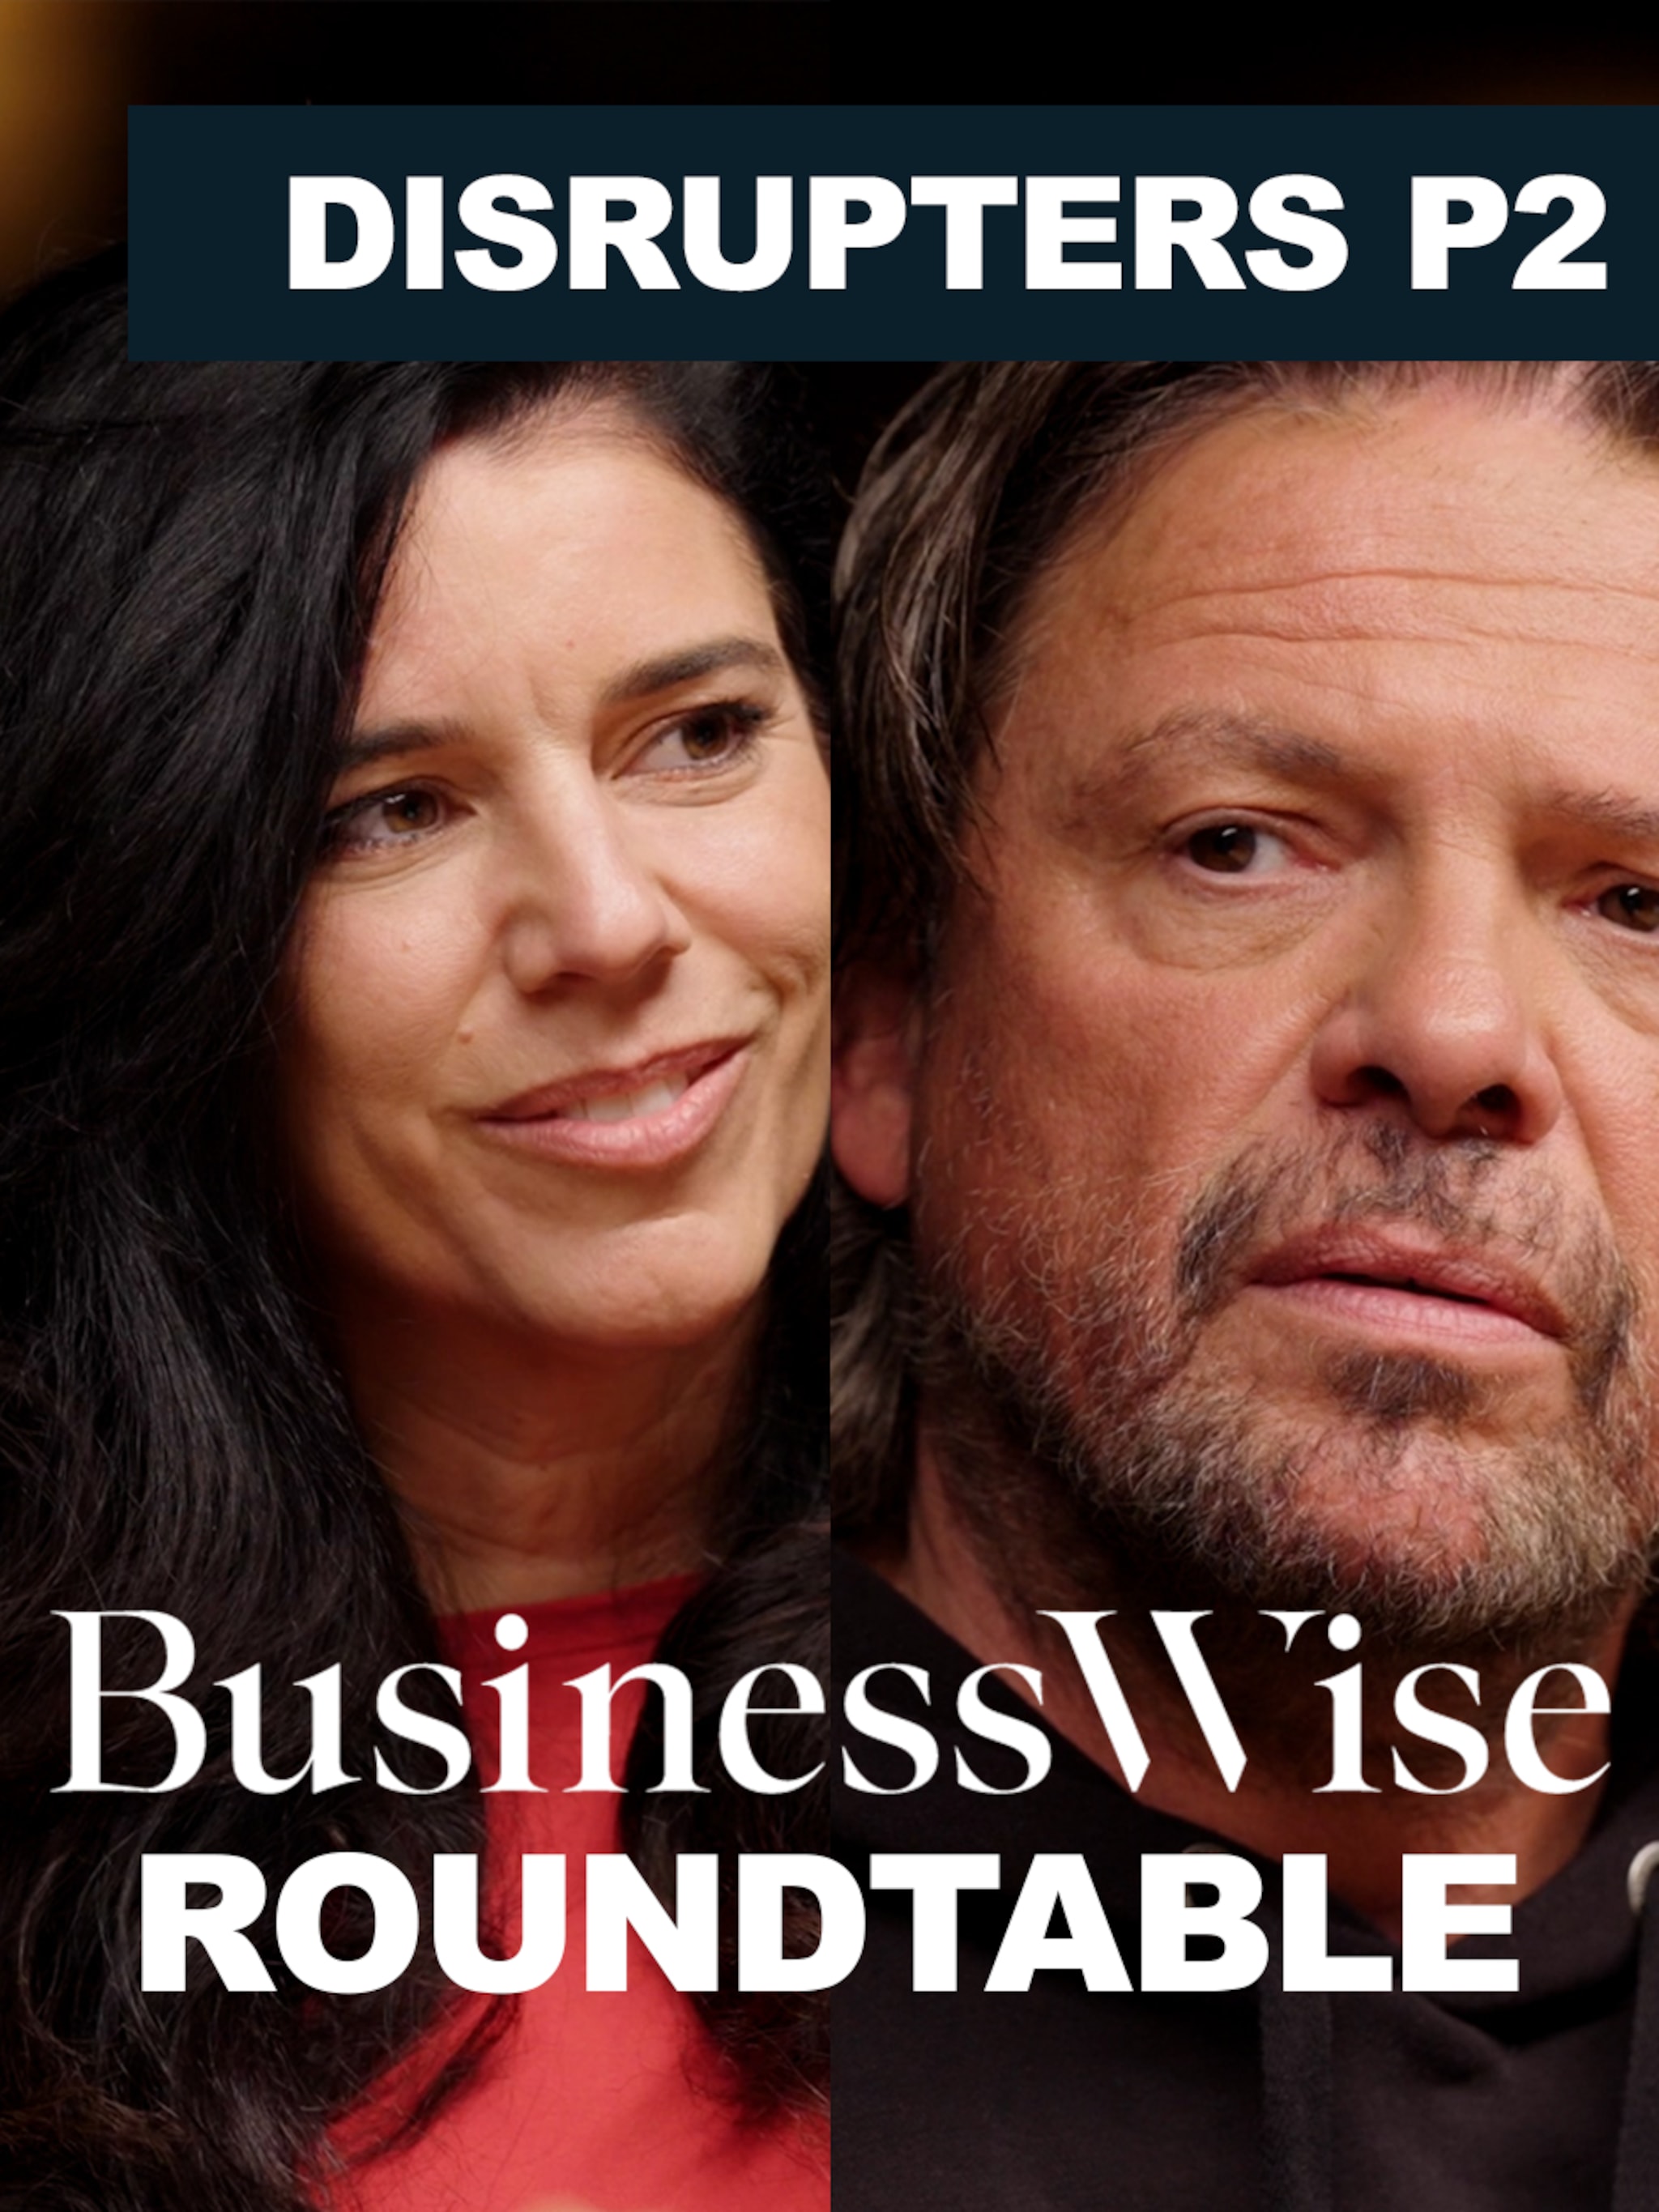 businesswise-roundtable-vier-disruptors-maatschappelijke-betrokkenheid